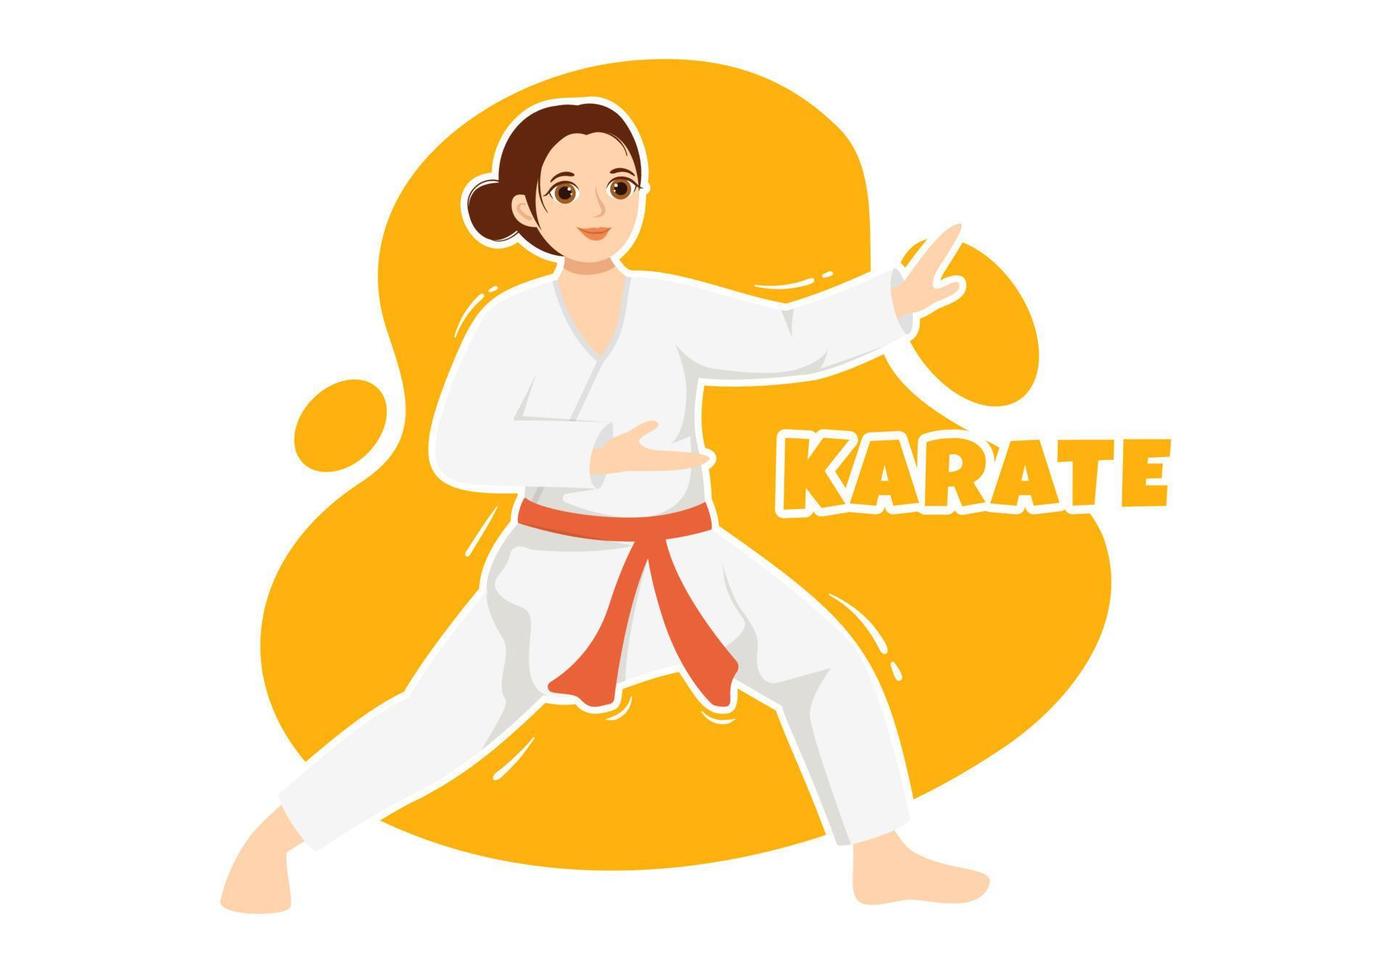 kinder, die einige grundlegende karate-kampfkunstbewegungen machen, posen kämpfen und kimono in karikaturhand tragen, die für die illustration von landingpage-vorlagen gezeichnet wurden vektor